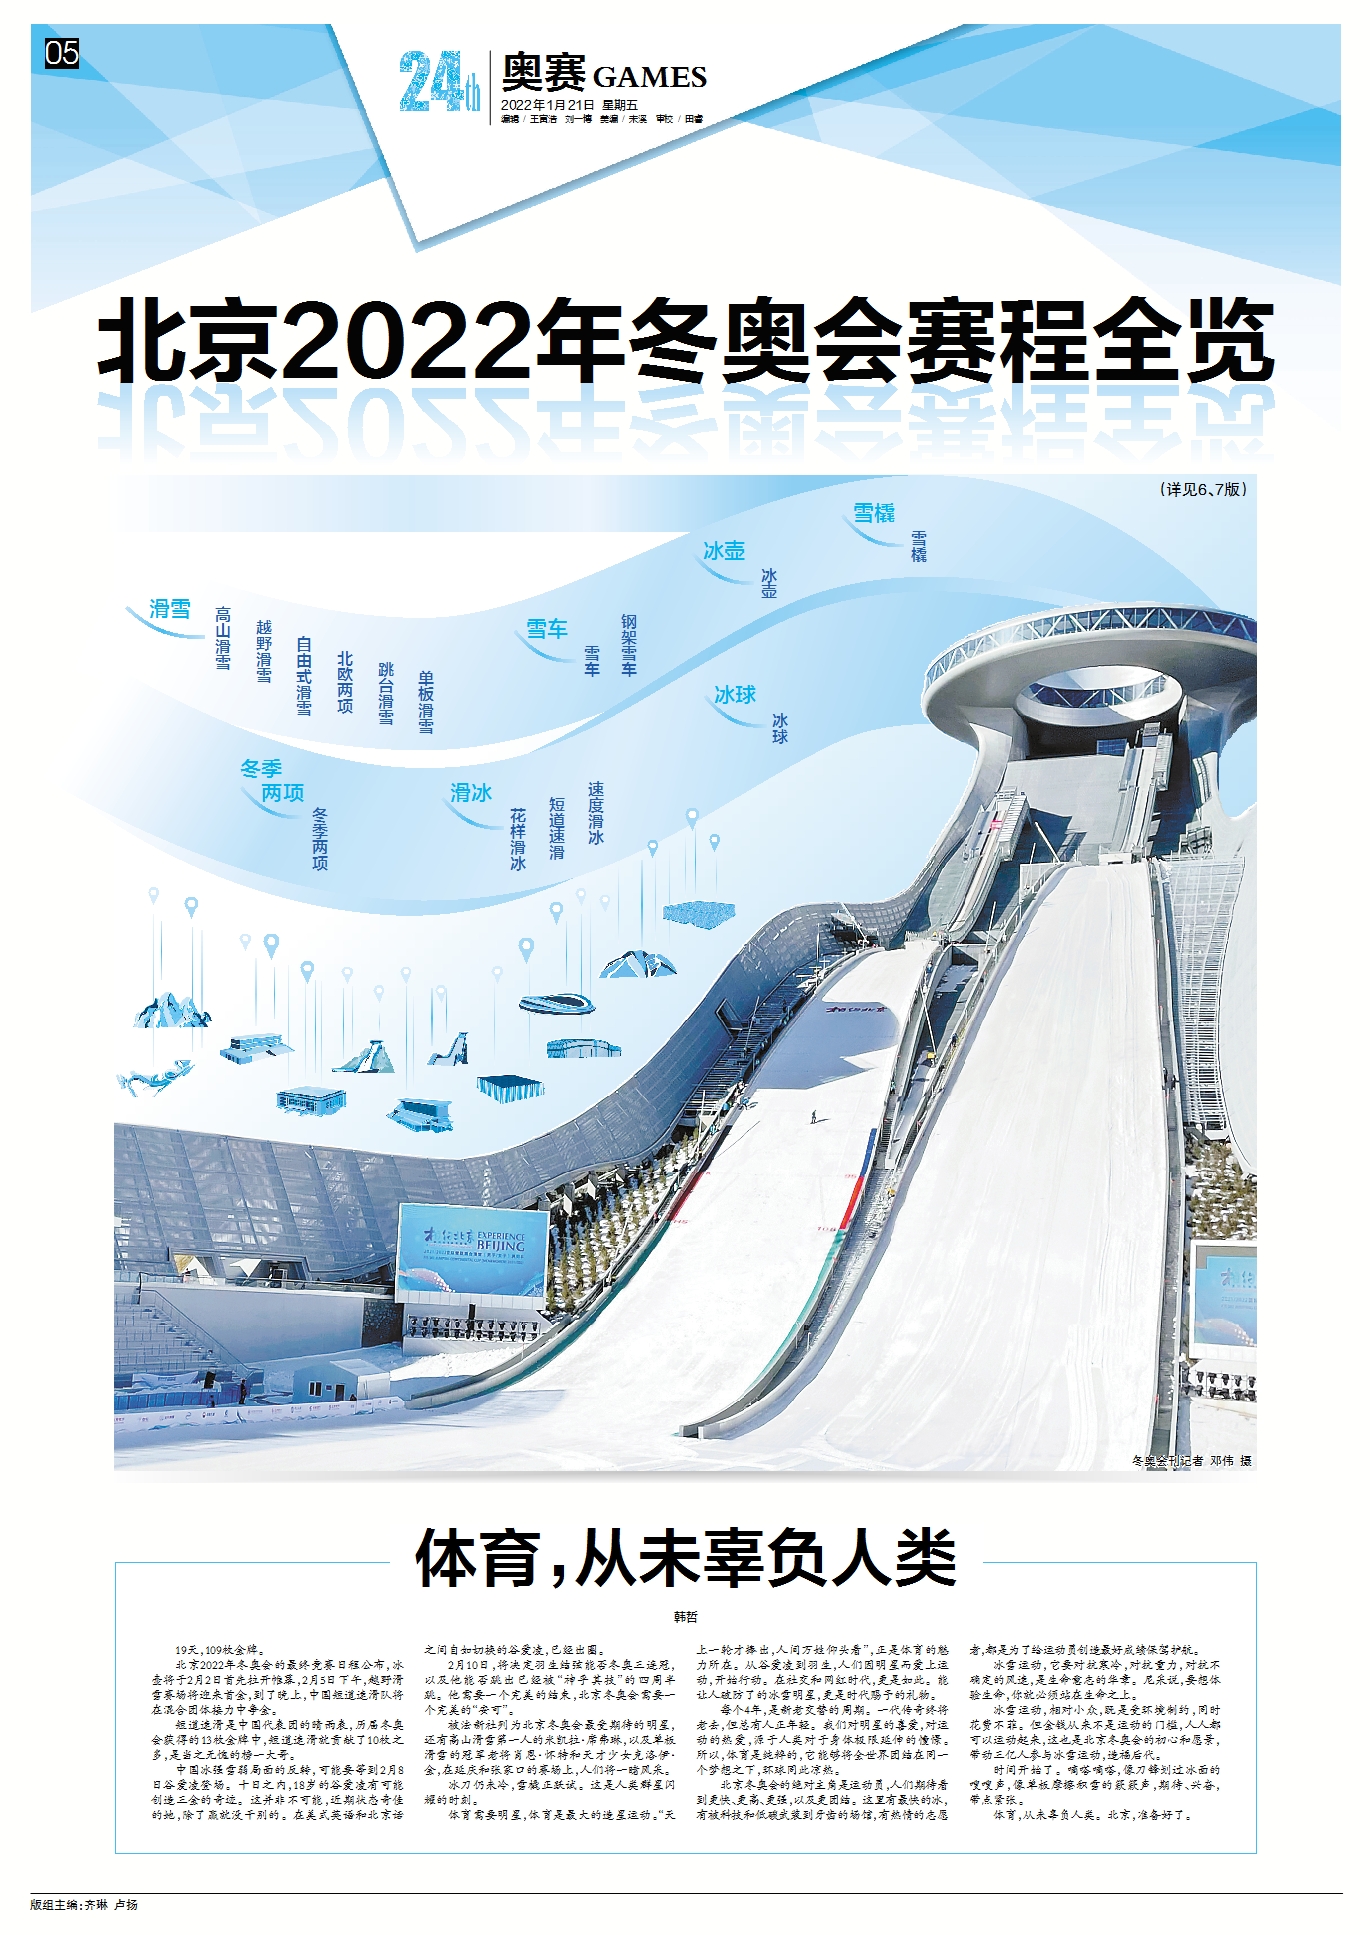 2022冬奥文化普及_北京中华圣经会旧址_北京冬奥会对中华文化的贡献